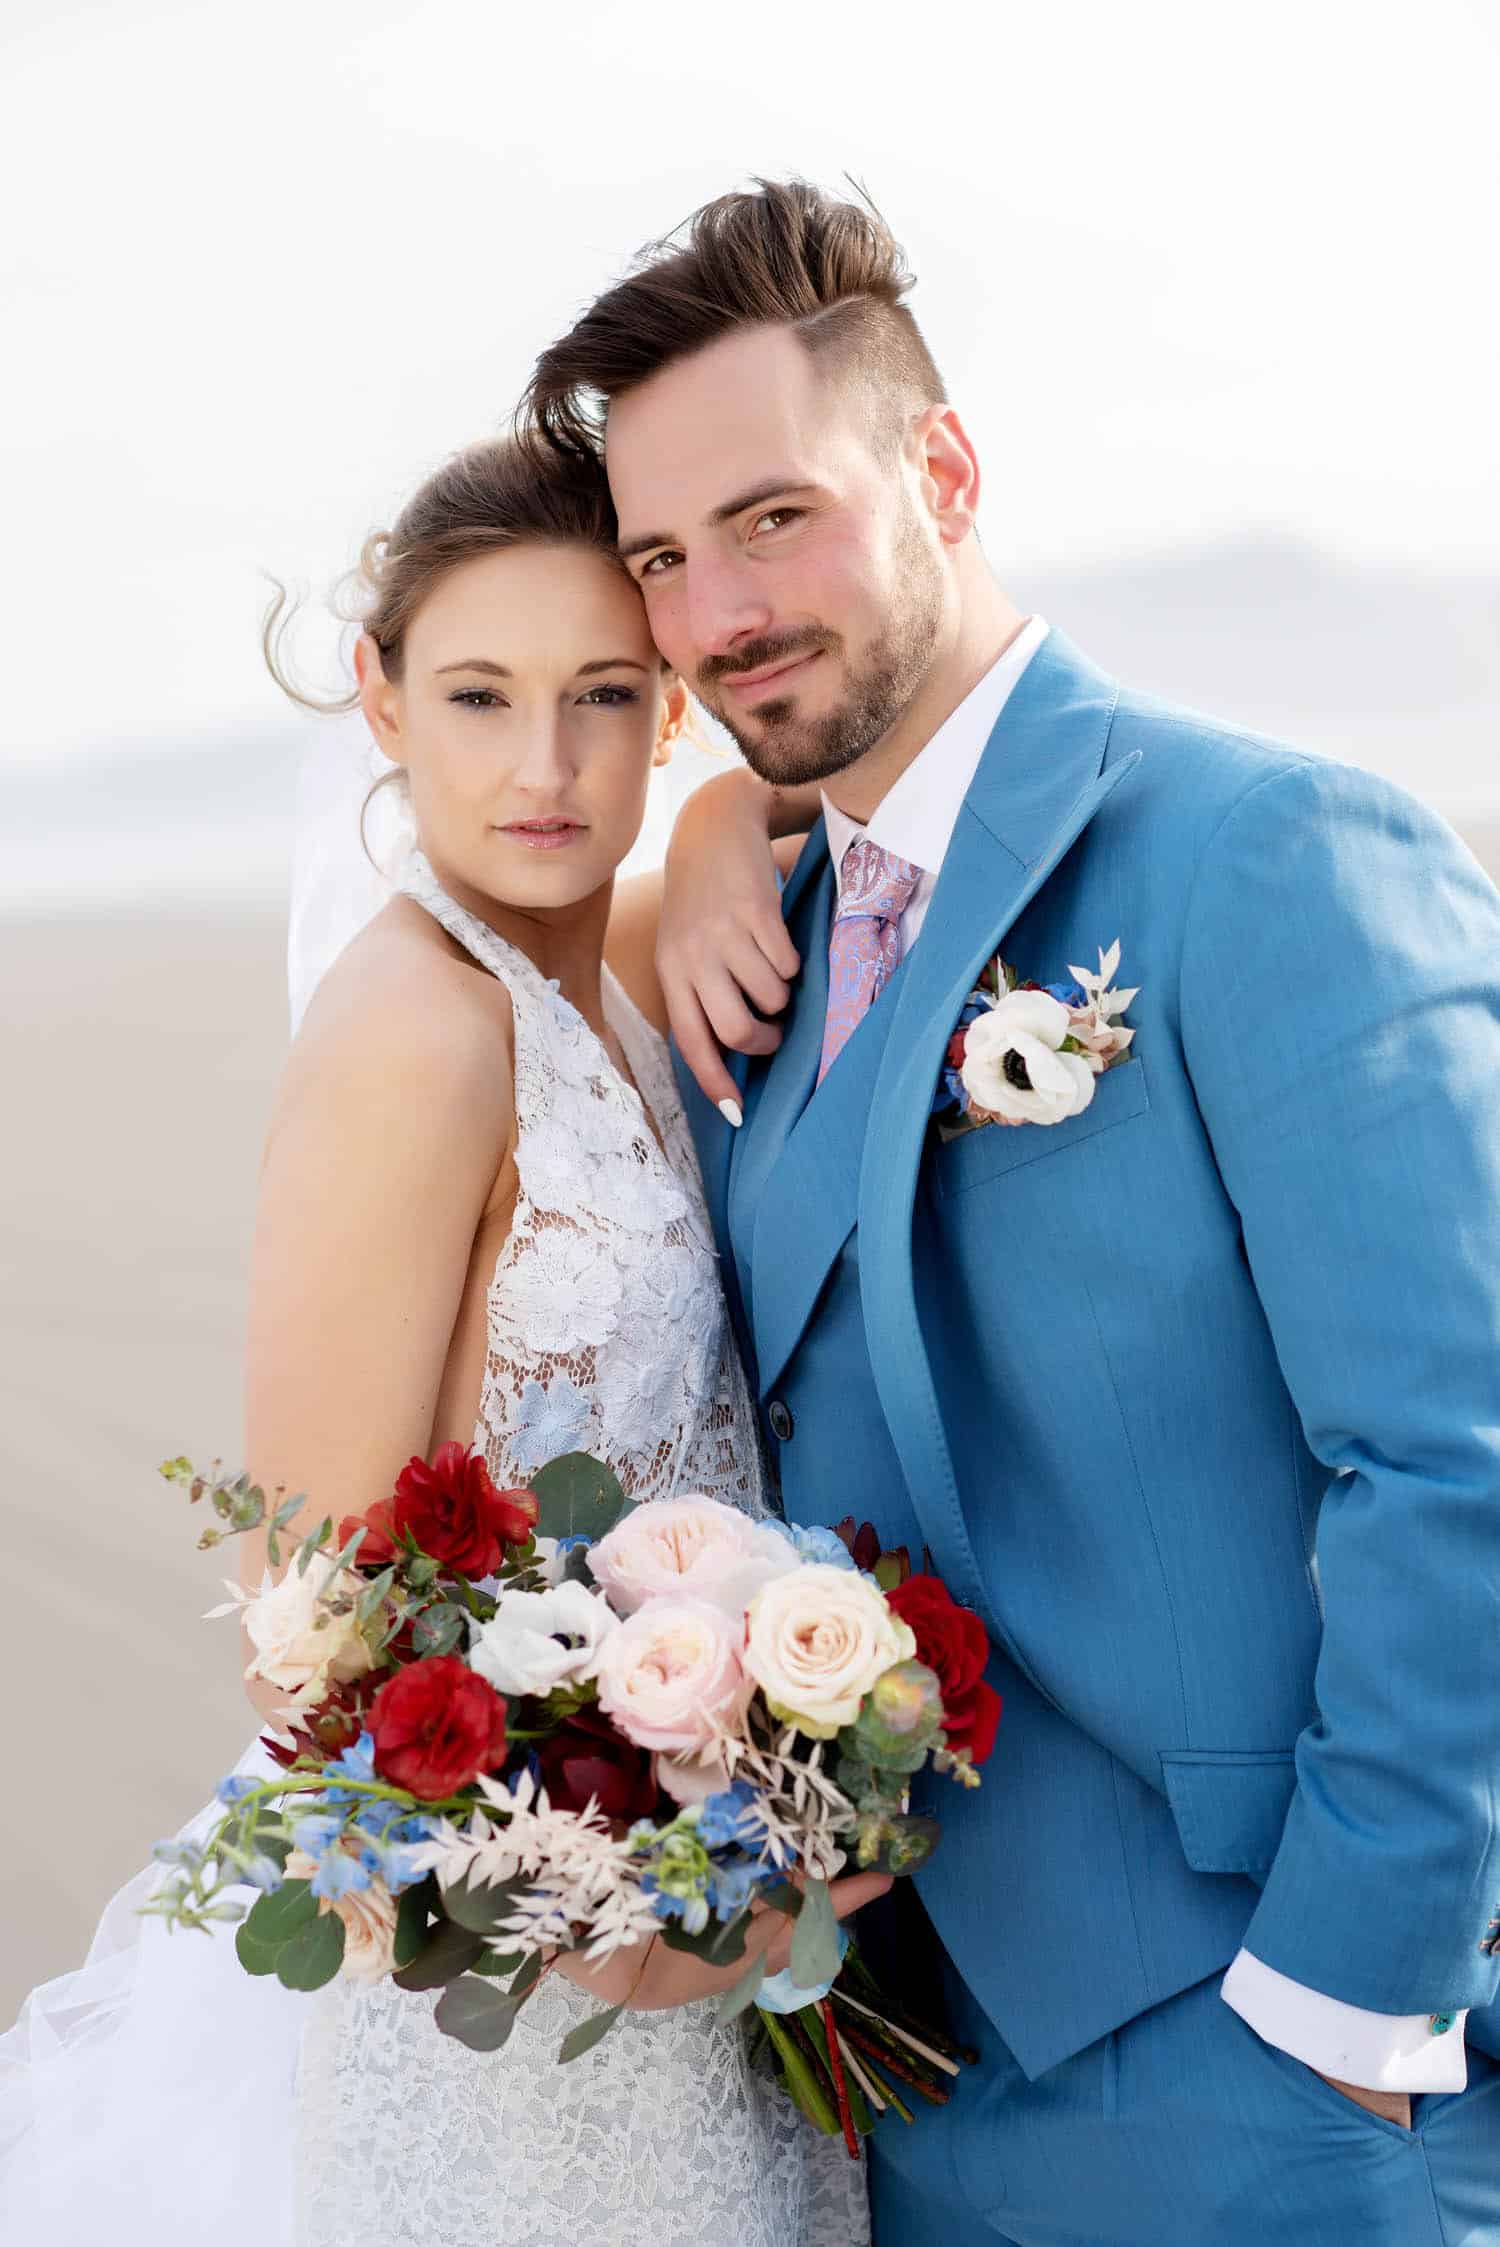 portland wedding florist, portland wedding flowers, oregon wedding florist, oregon wedding flowers